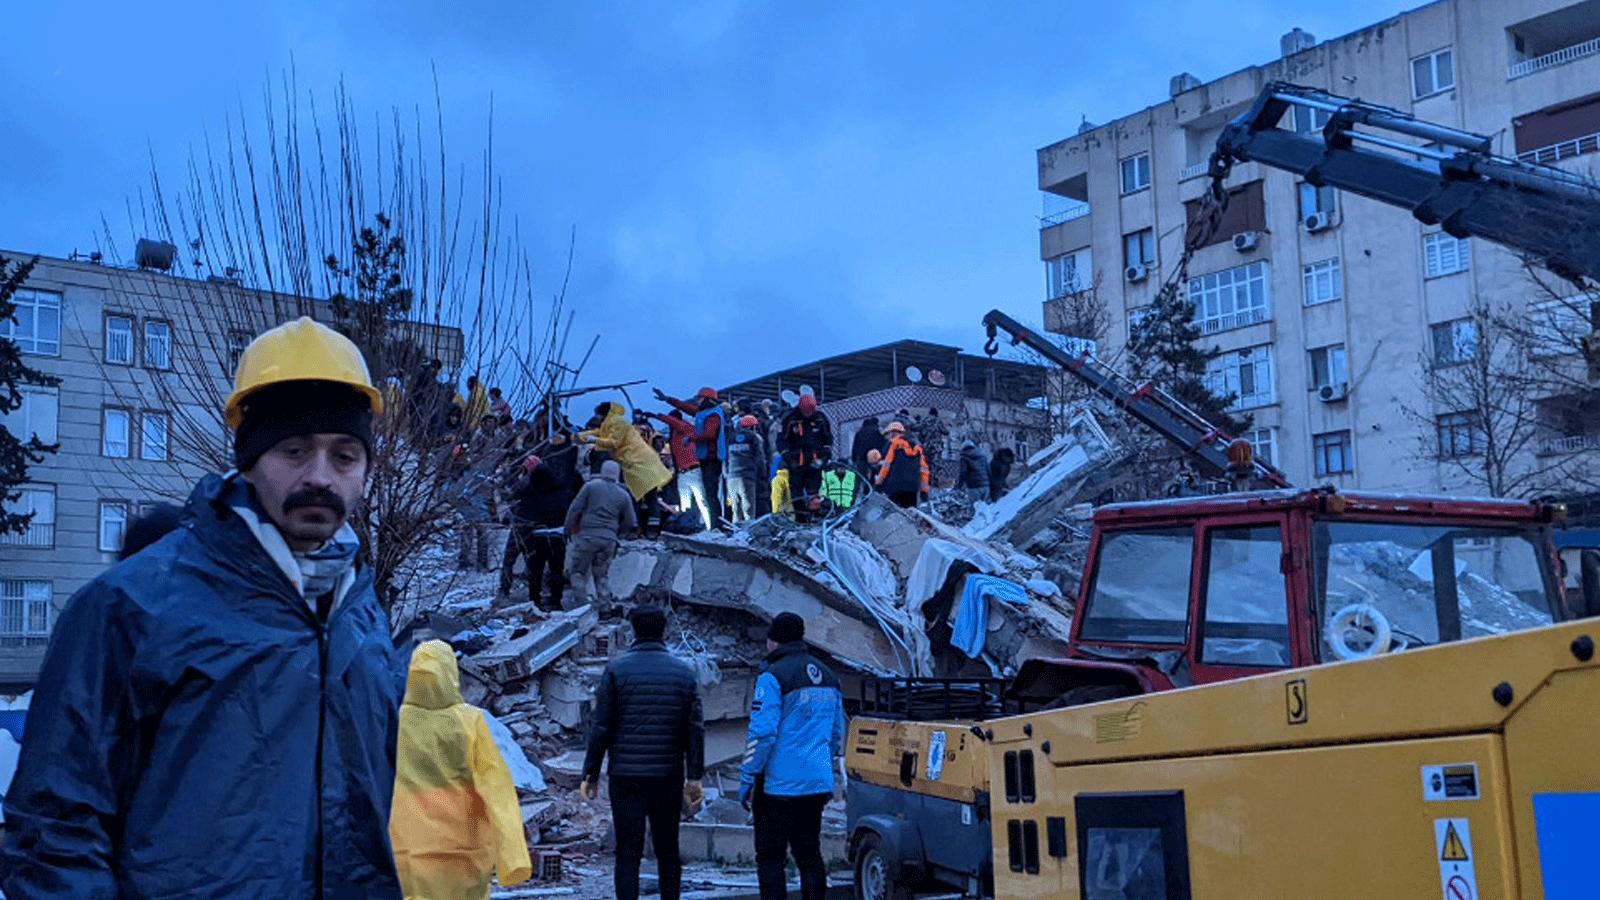  سكان مدينة سانليورفا المحطمة يعملون مع عناصر الإنقاذ على رفع أنقاض الزلزال في محاولة لانتشال أحياء من تحت الركام